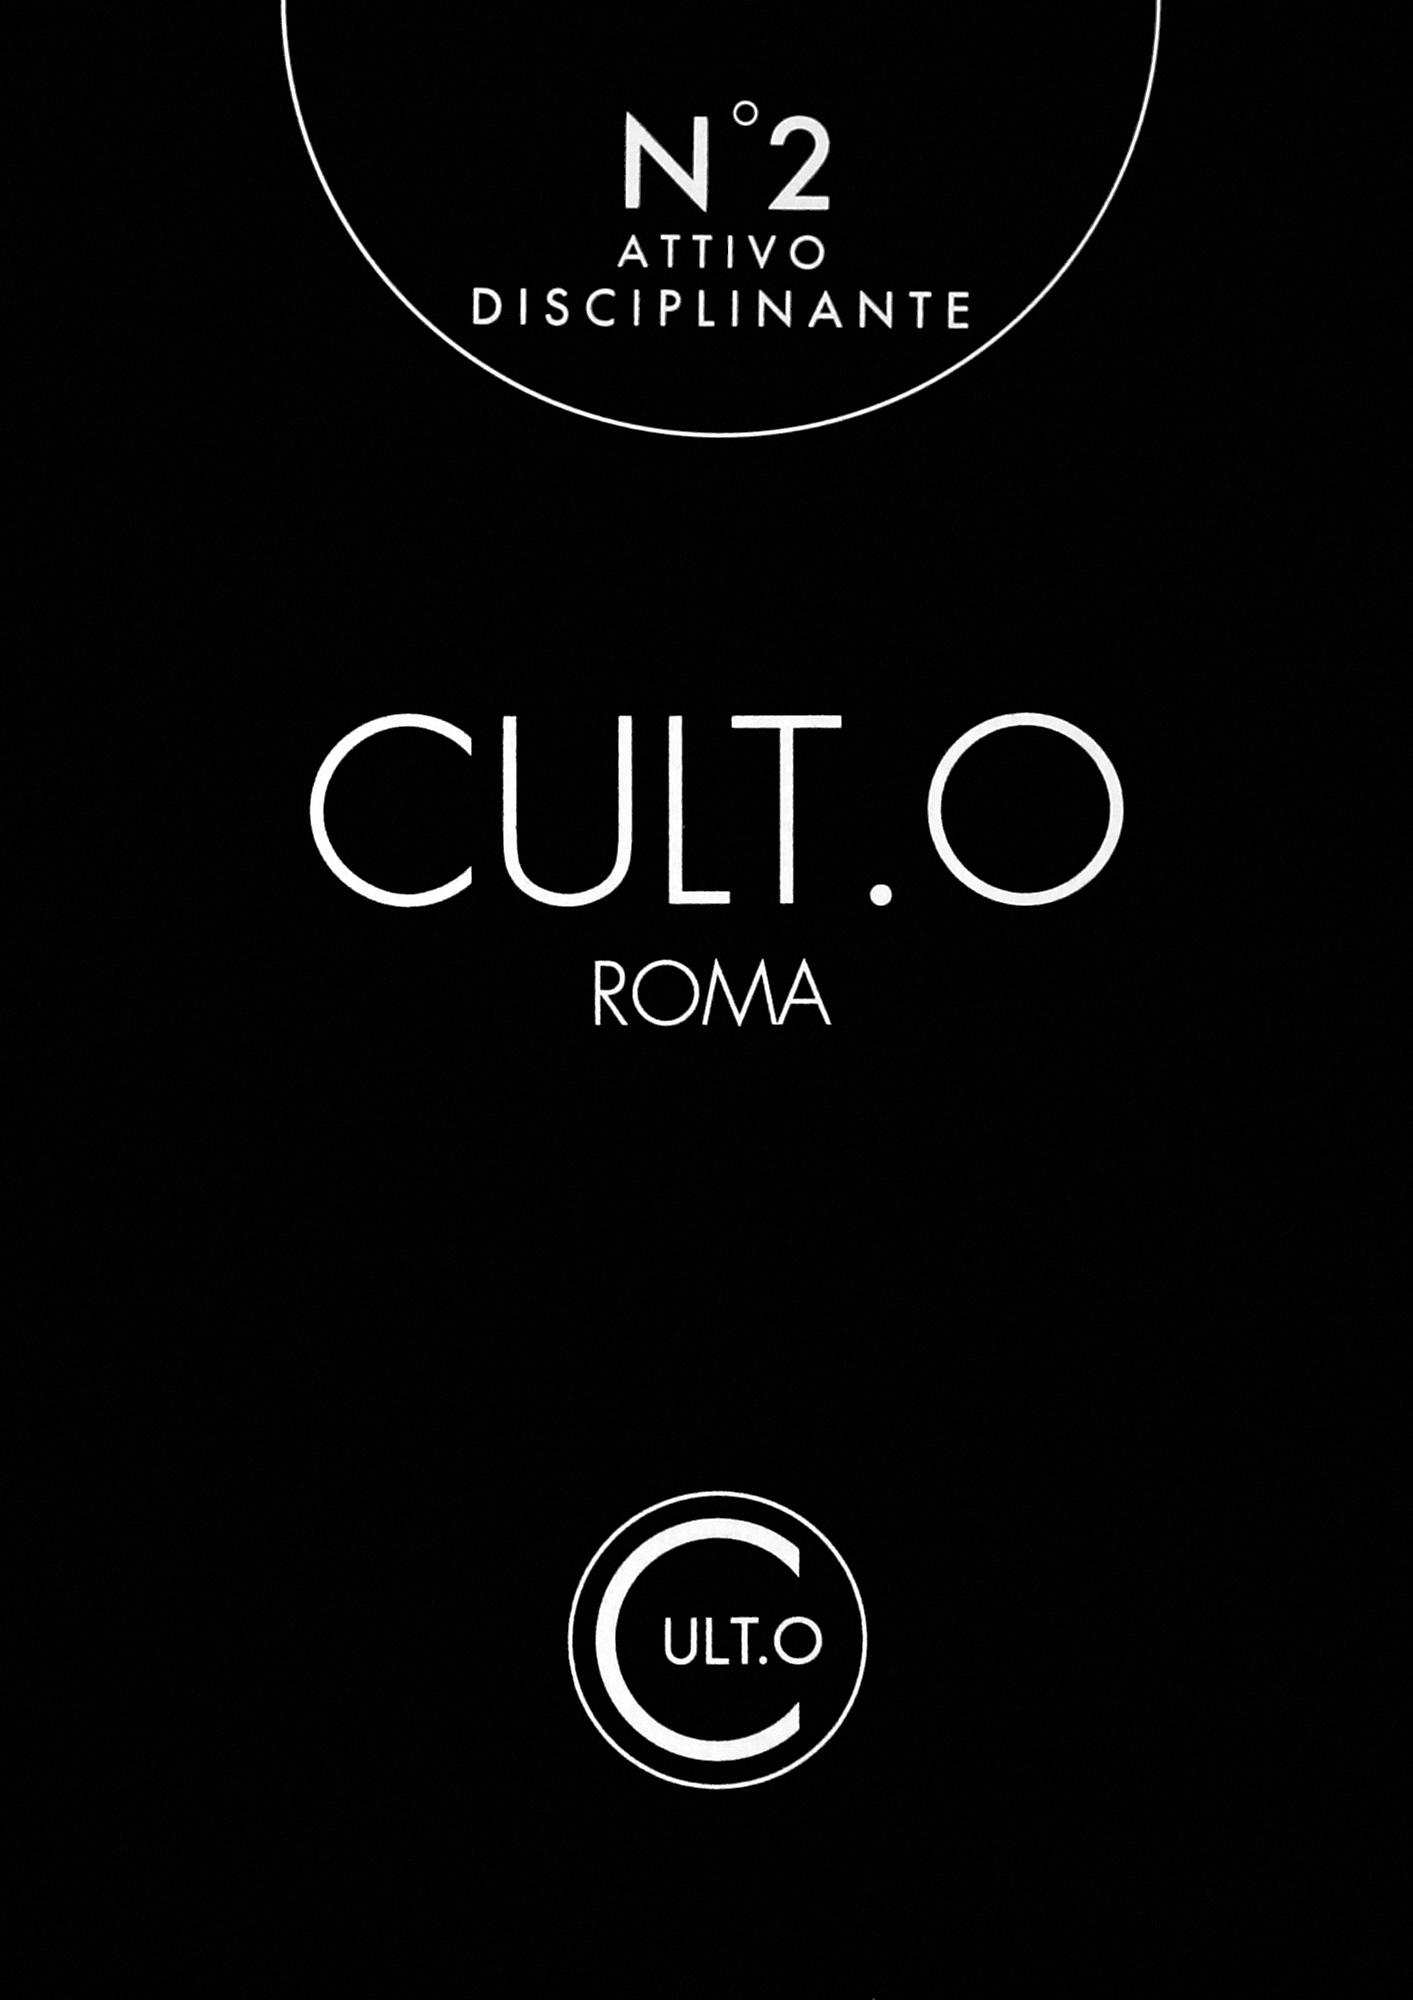 Koncentrat dyscyplinujący i wygładzający włosy - Cult.O Roma Attivo Disciplinante №2 — Zdjęcie 12 x 10 ml